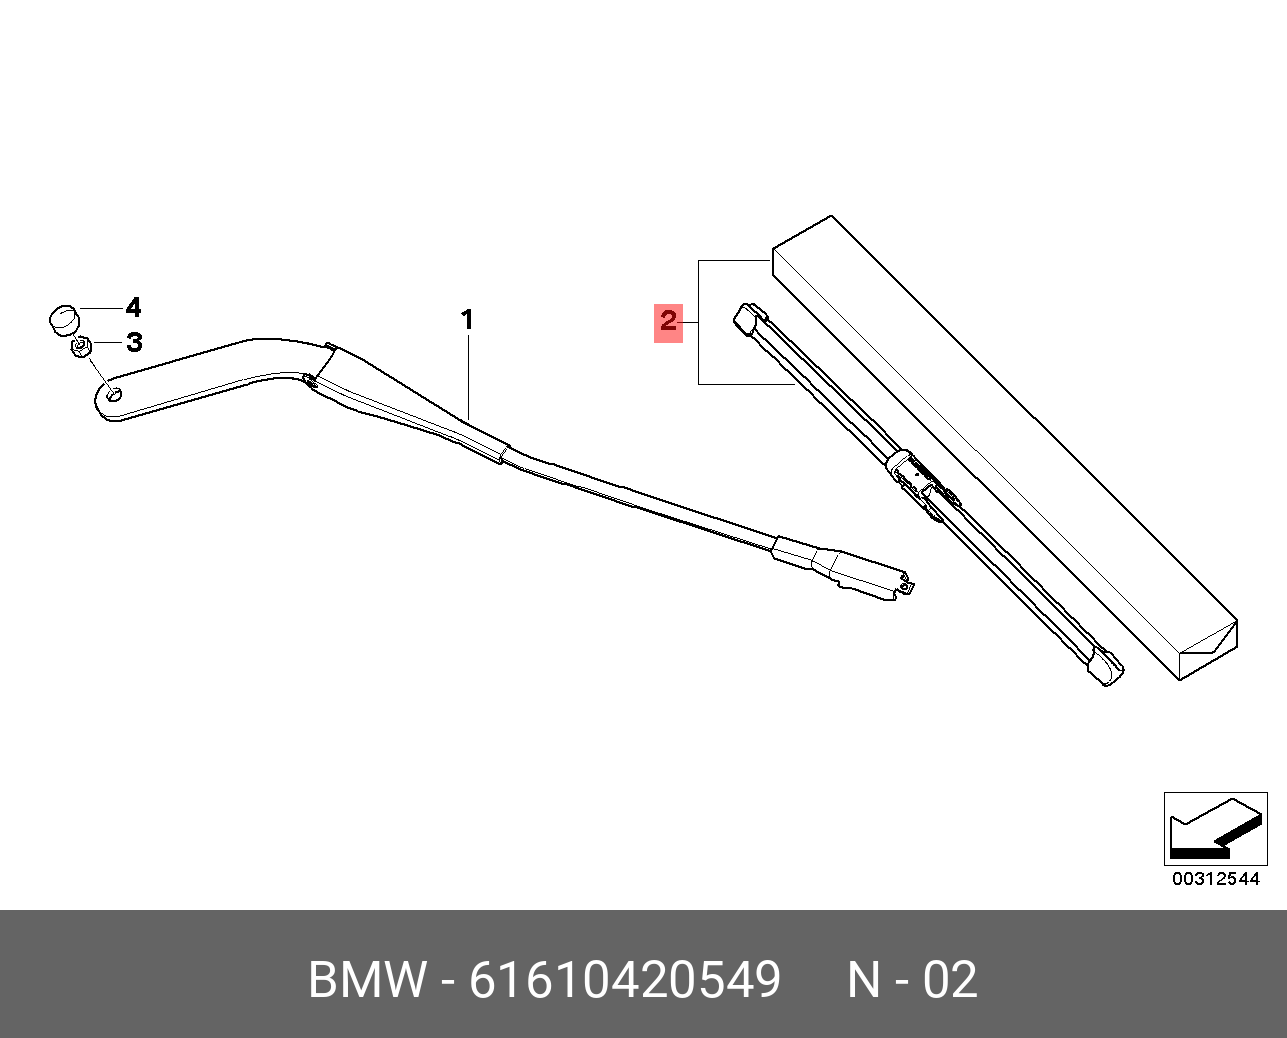 Щётки стеклоочистителя, комплект, передние   BMW арт. 61610420549